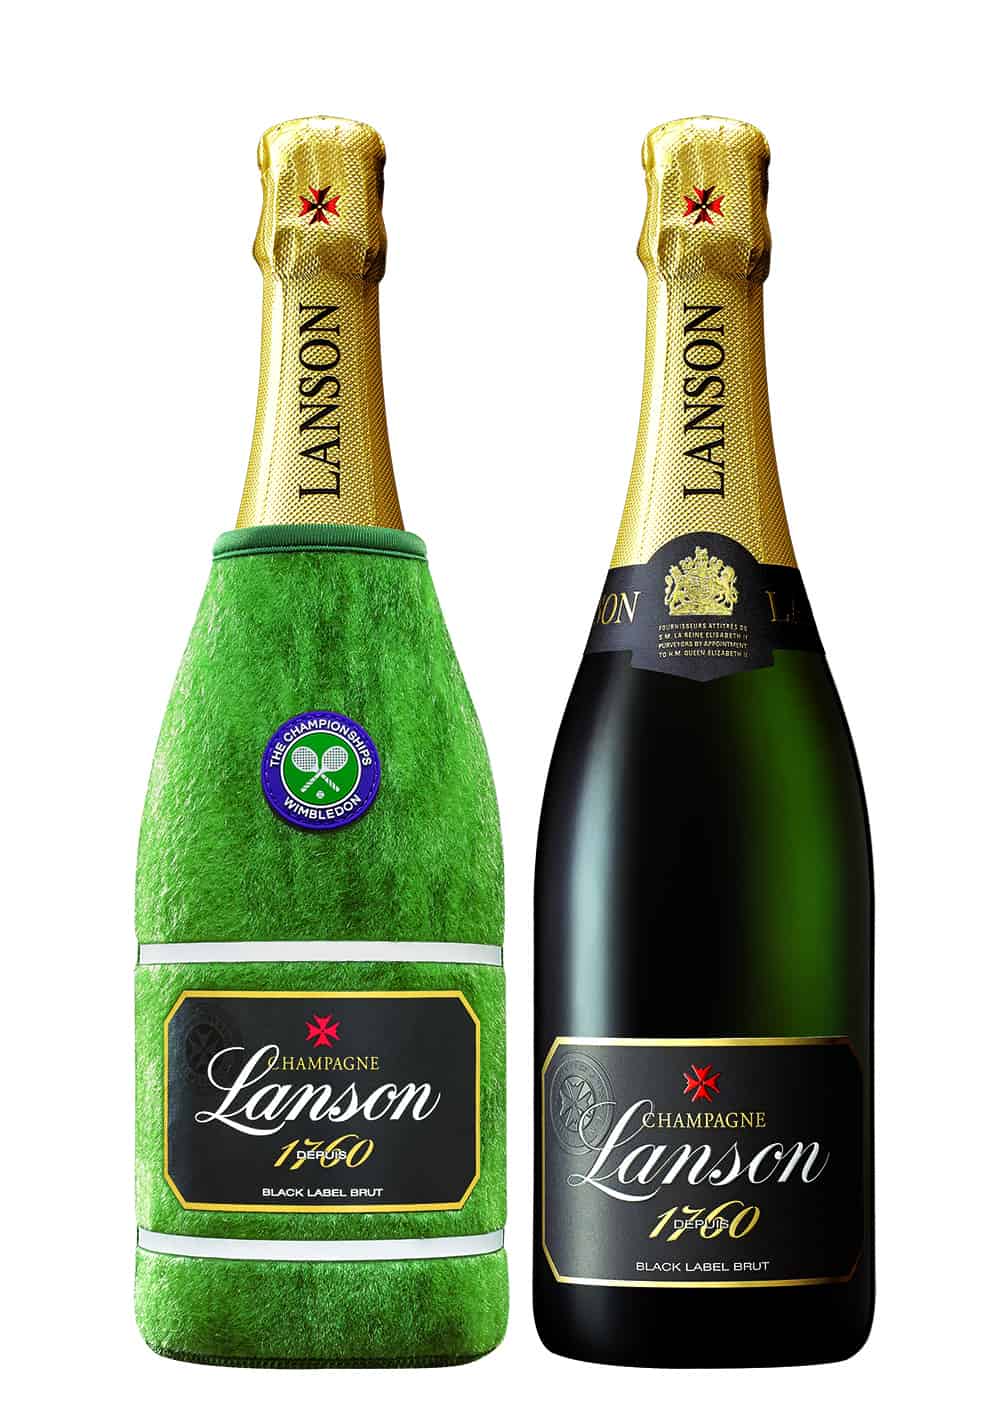 Lanson Champagne